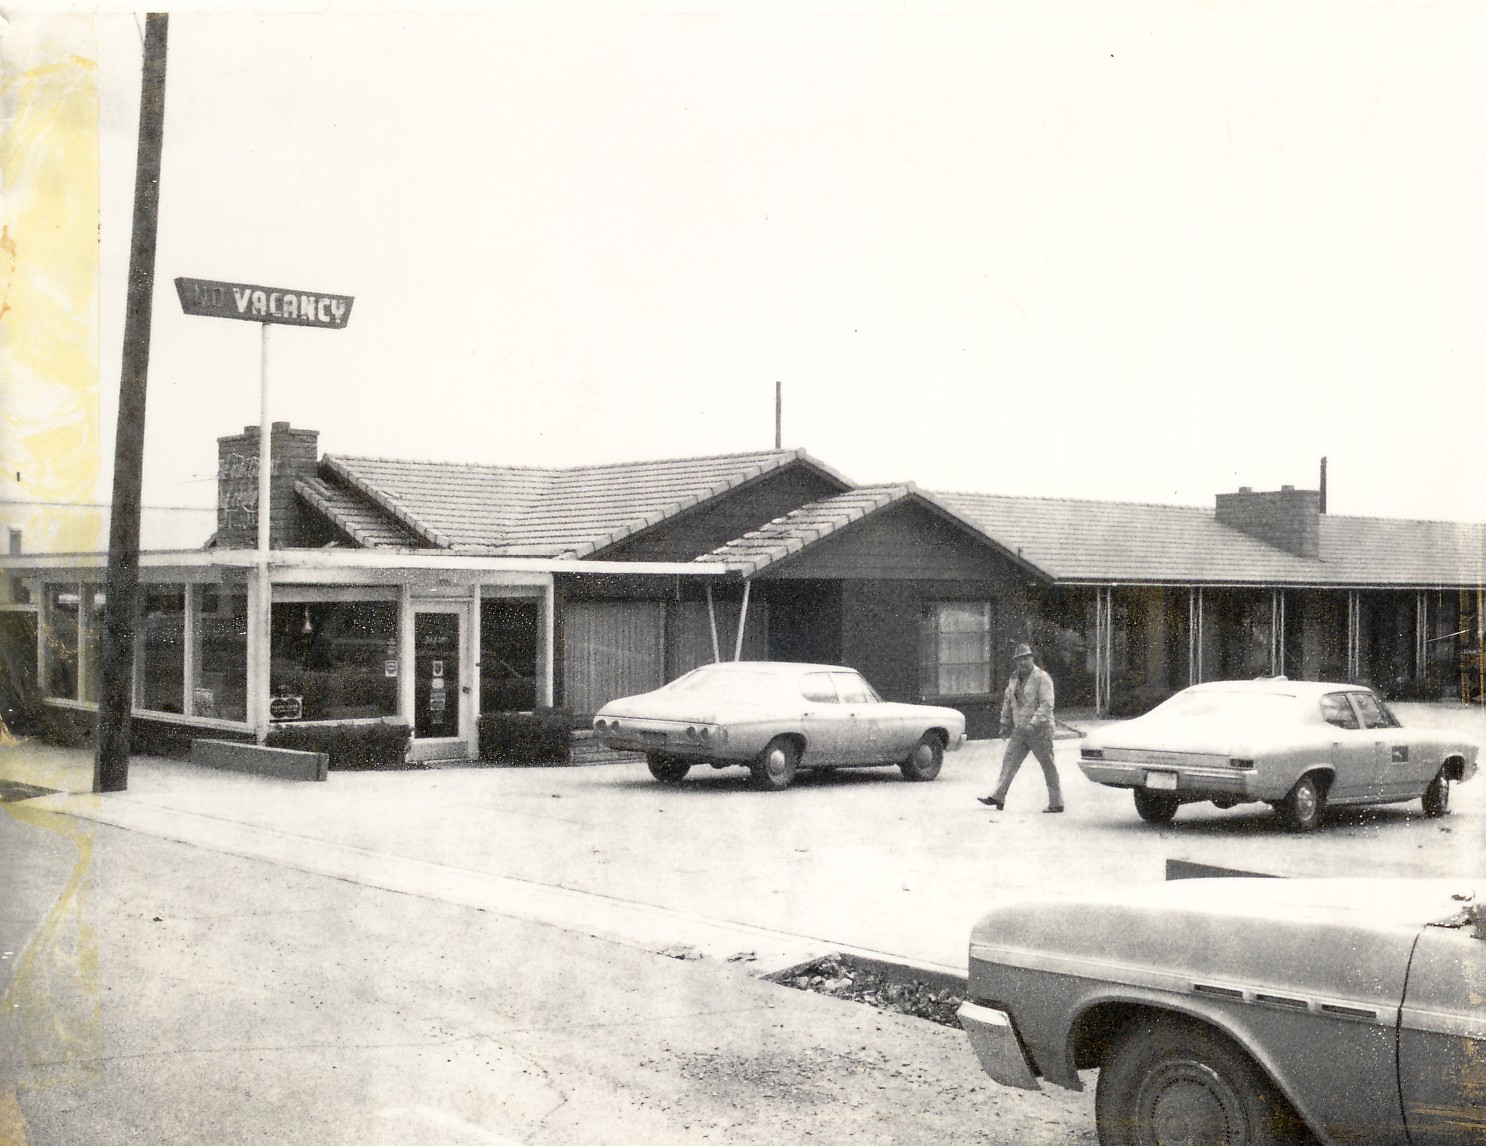 The Twin Oaks Motel in St George